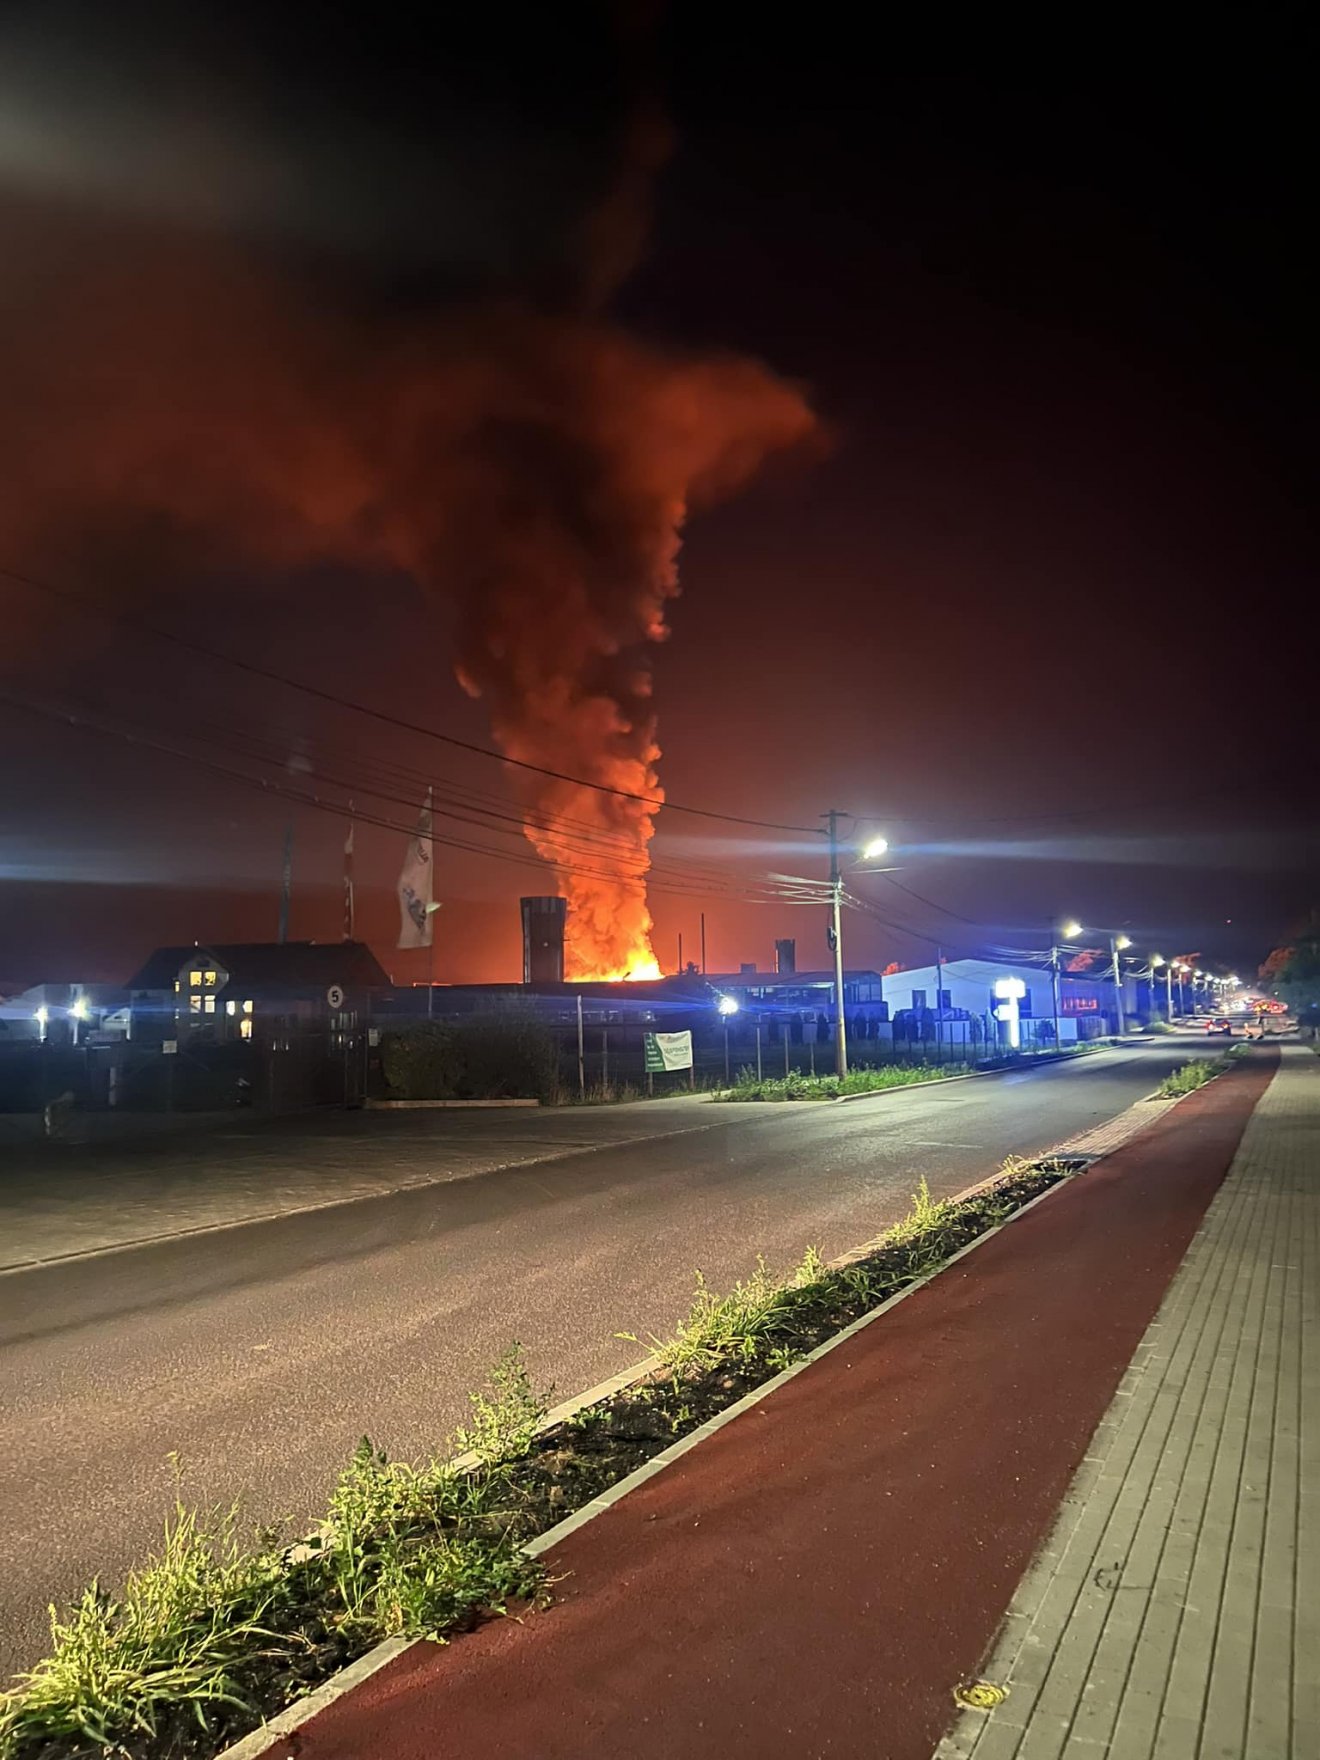 Lángok csaptak fel, hatalmas füstoszlop egy székelyudvarhelyi üzemcsarnoknál